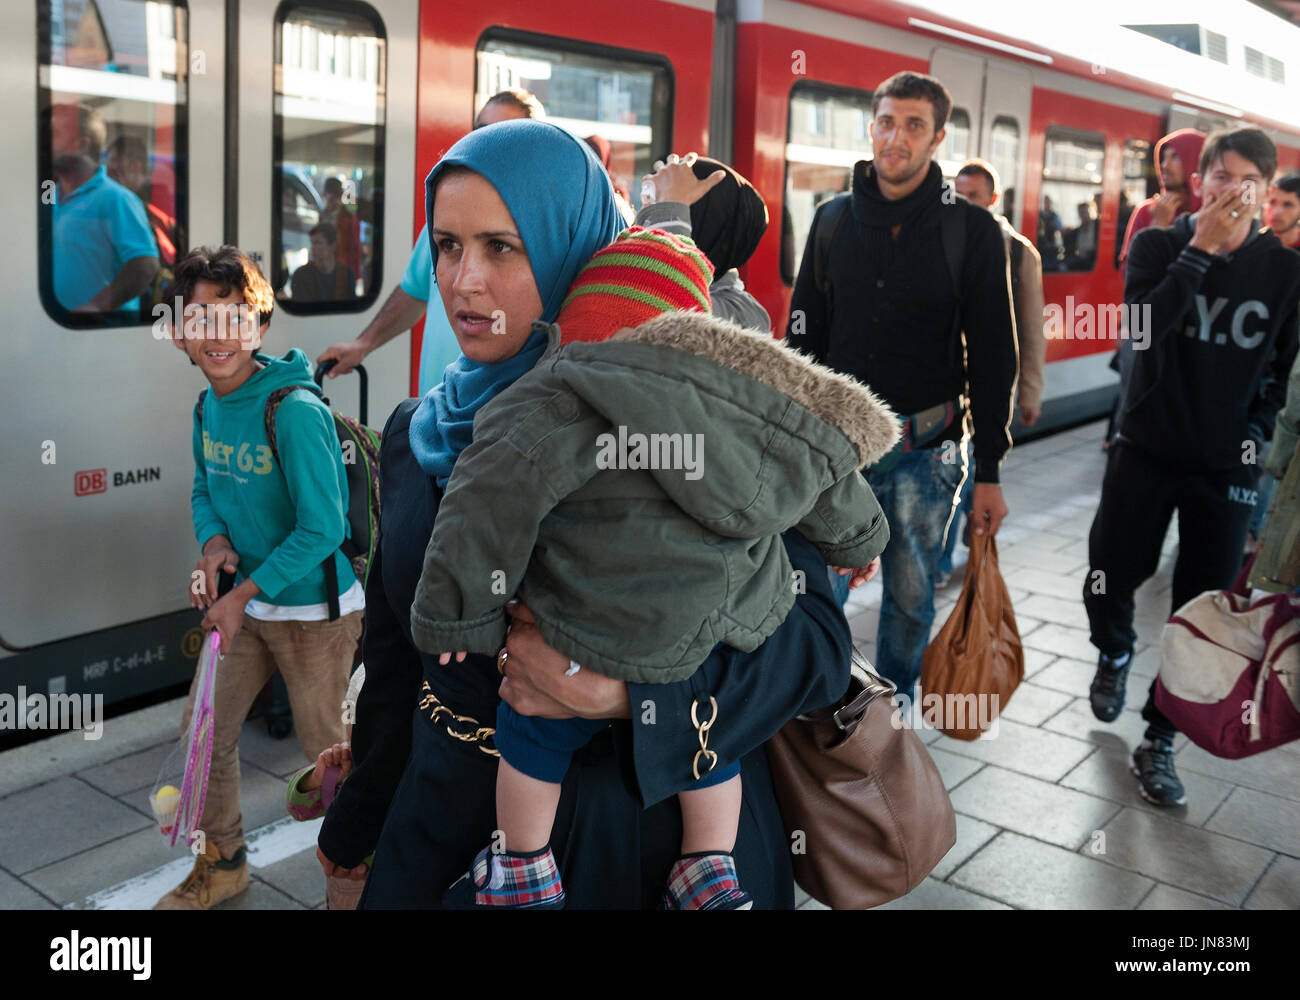 Monaco di Baviera, Germania - Settembre 10th, 2015: Madre e figlia dalla Siria arrivando a Monaco di Baviera. I rifugiati che chiedono asilo in Europa. Foto Stock